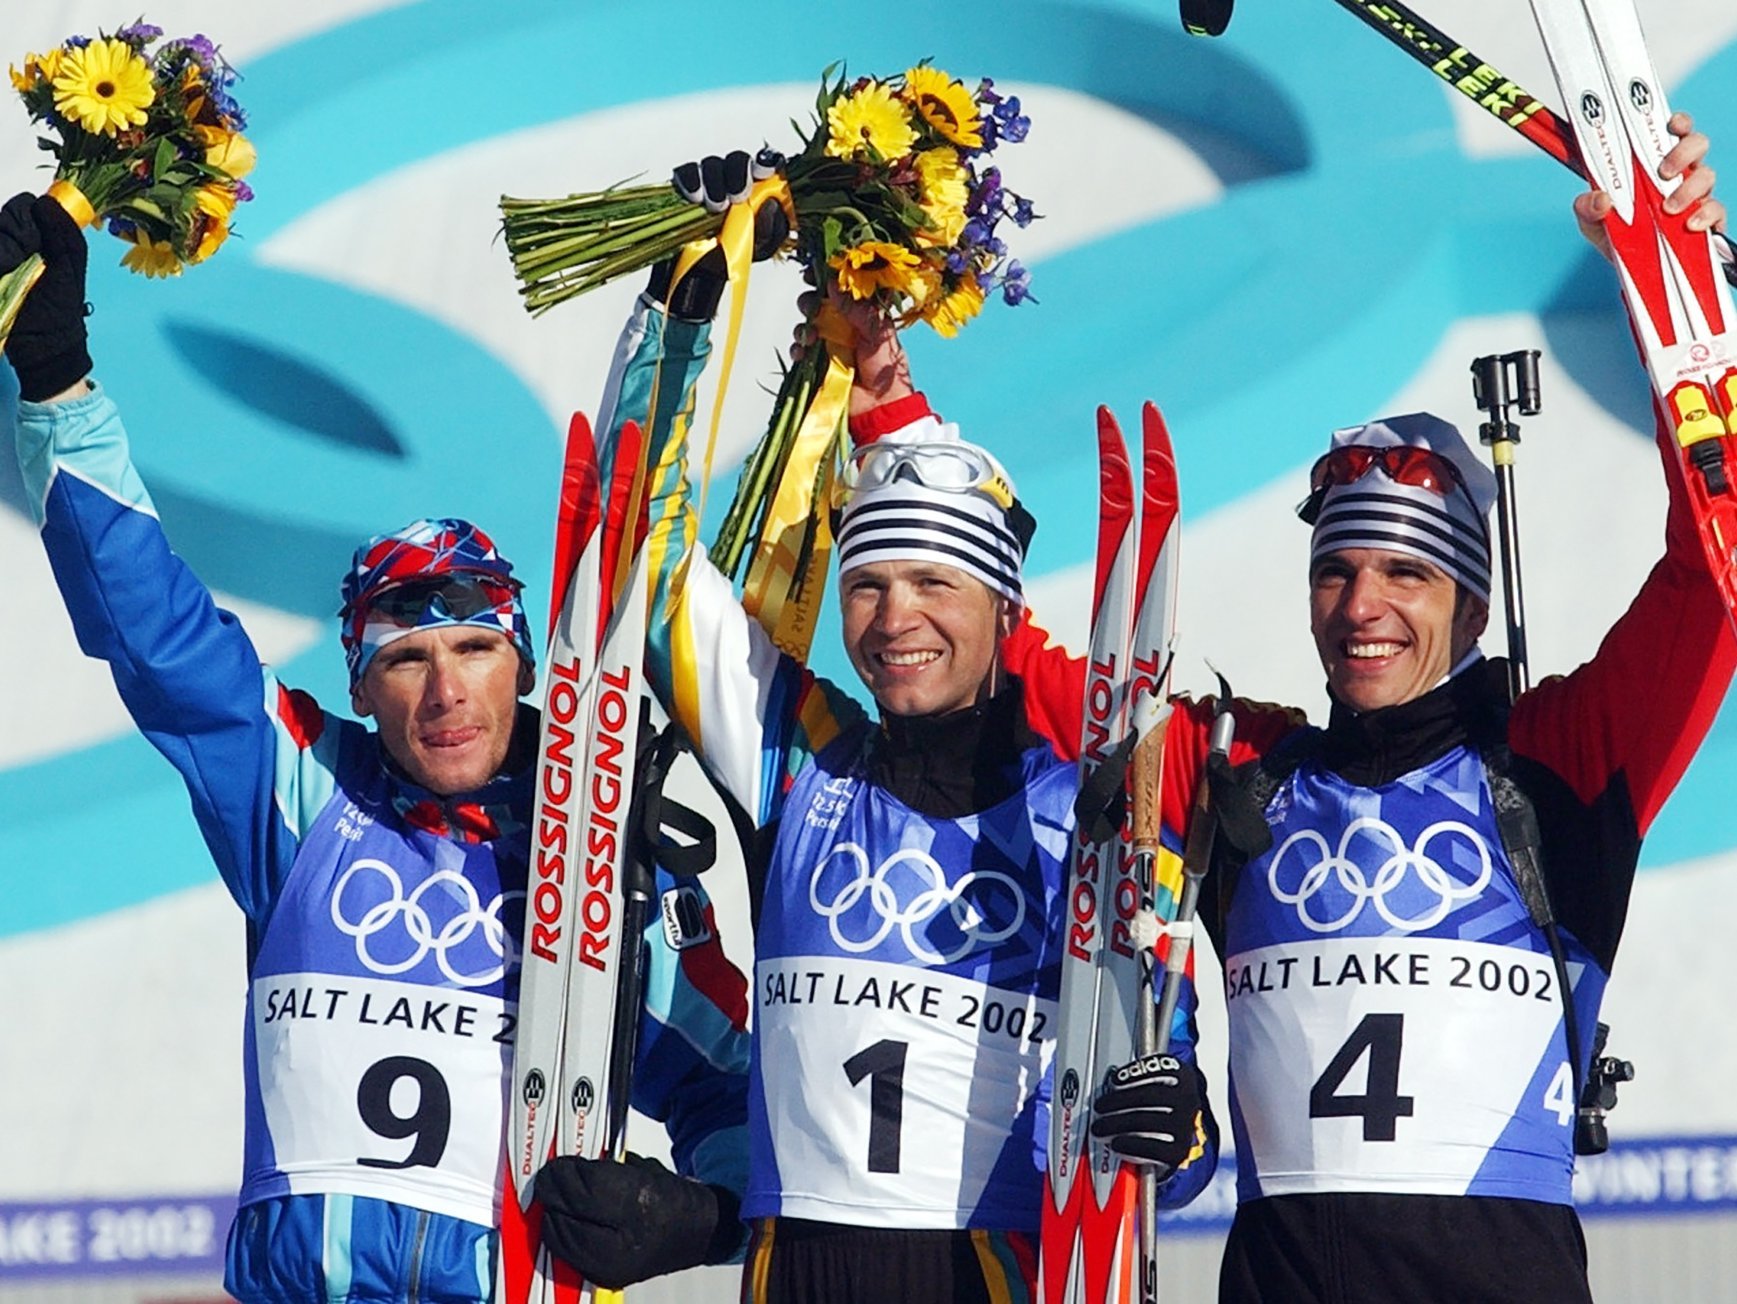 Raphaël Poirée, médaillé d’argent, à gauche, Ole Einar Bjoerndalen, médaillé d’or, au centre, et le médaillé de bronze Ricco Gross sur le podium après la poursuite masculine de biathlon de 12,5 km aux Jeux olympiques d’hiver en 2002.